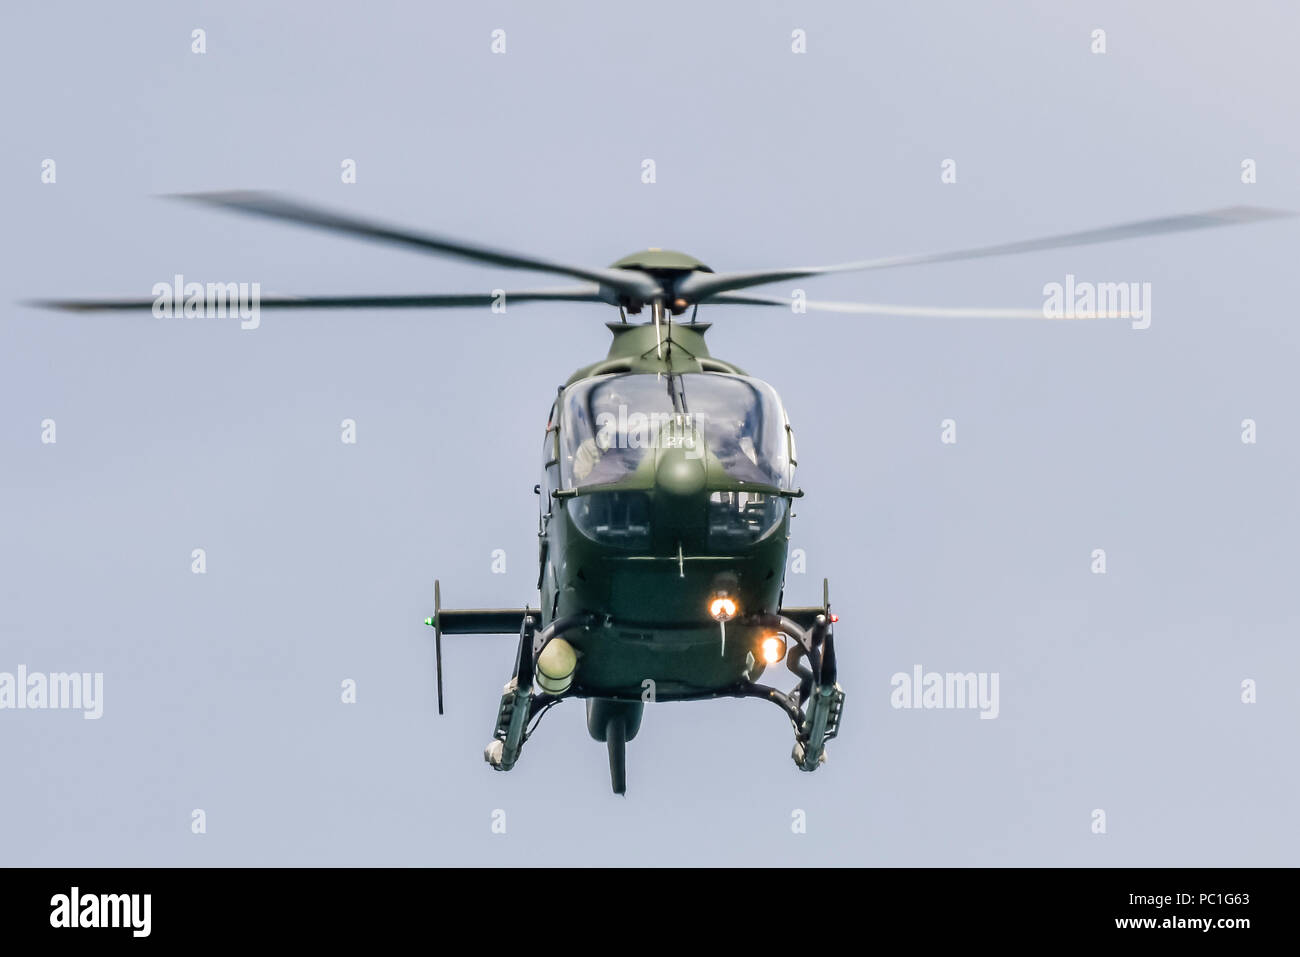 El Eurocopter EC-135 helicóptero perteneciente a la formación Irish Air Corps. Foto de stock